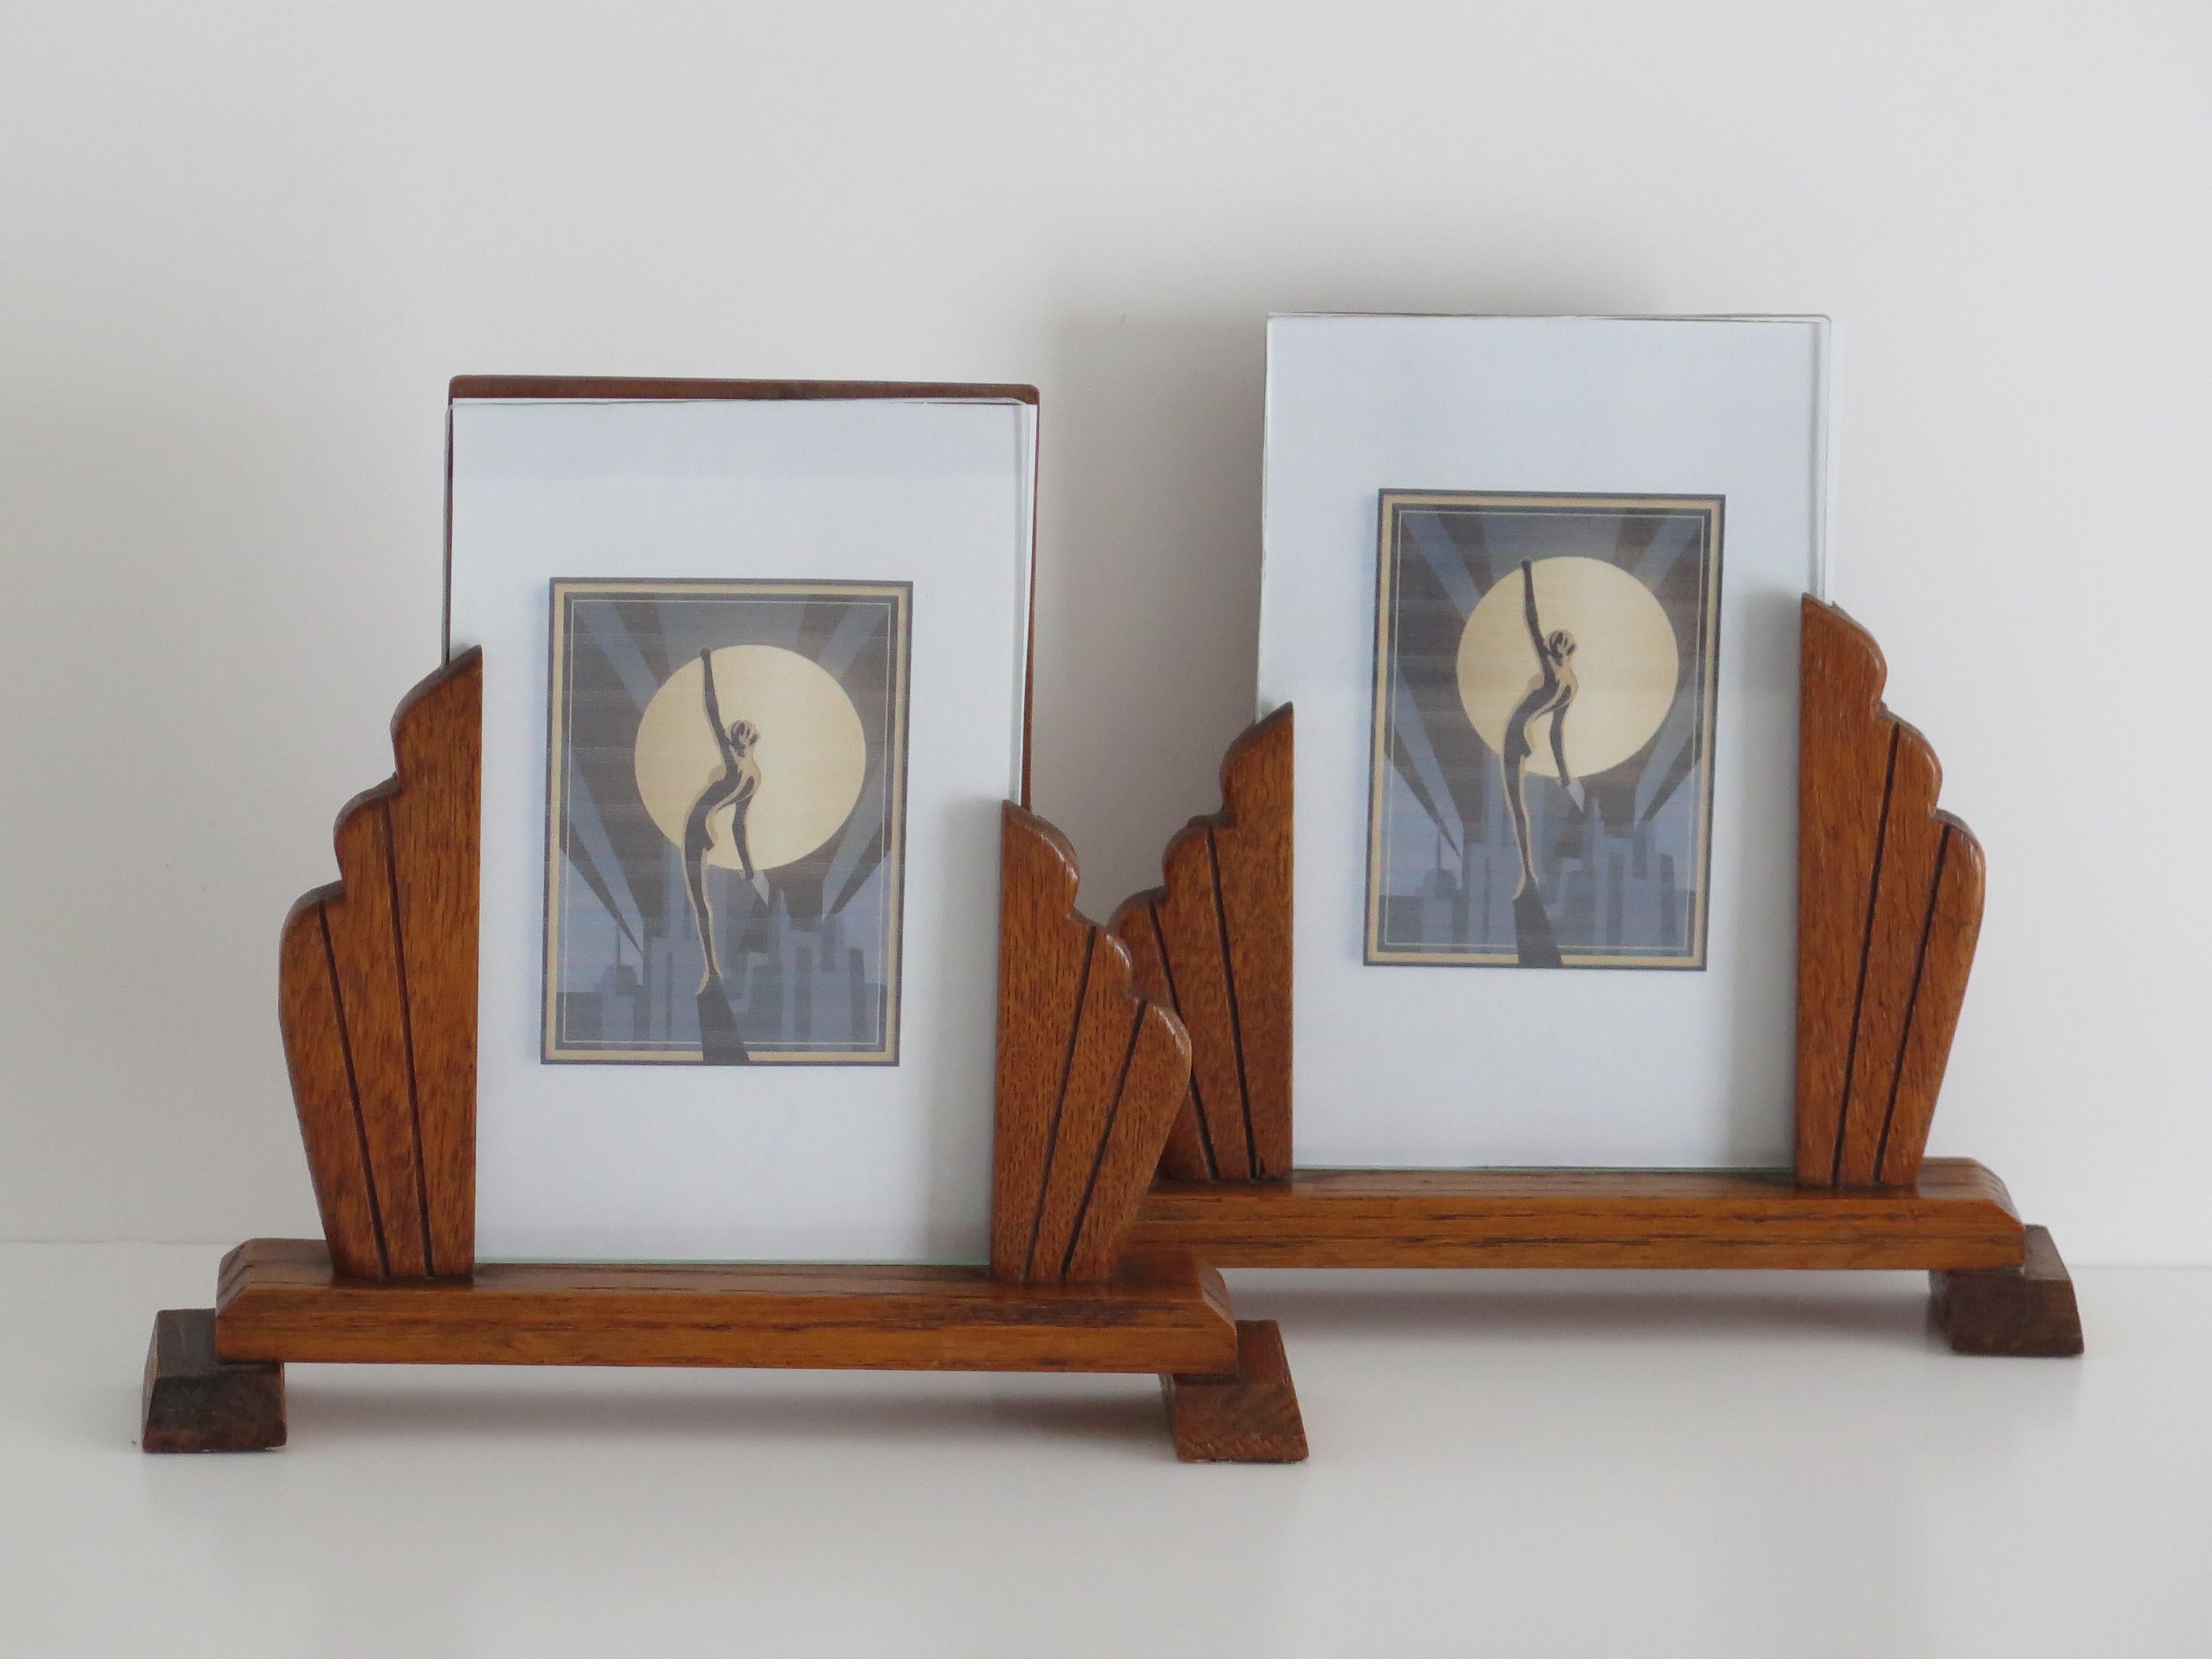 Dies ist ein wunderschönes Pärchen von Fotorahmen aus der Zeit des Art Deco, handgefertigt aus Eichenholz mit einem Fächerdesign und Glaseinsätzen, die wir auf ca. 1930 datieren.

Ein echtes Paar zu finden ist selten!

Beide Stücke sind sehr gut aus